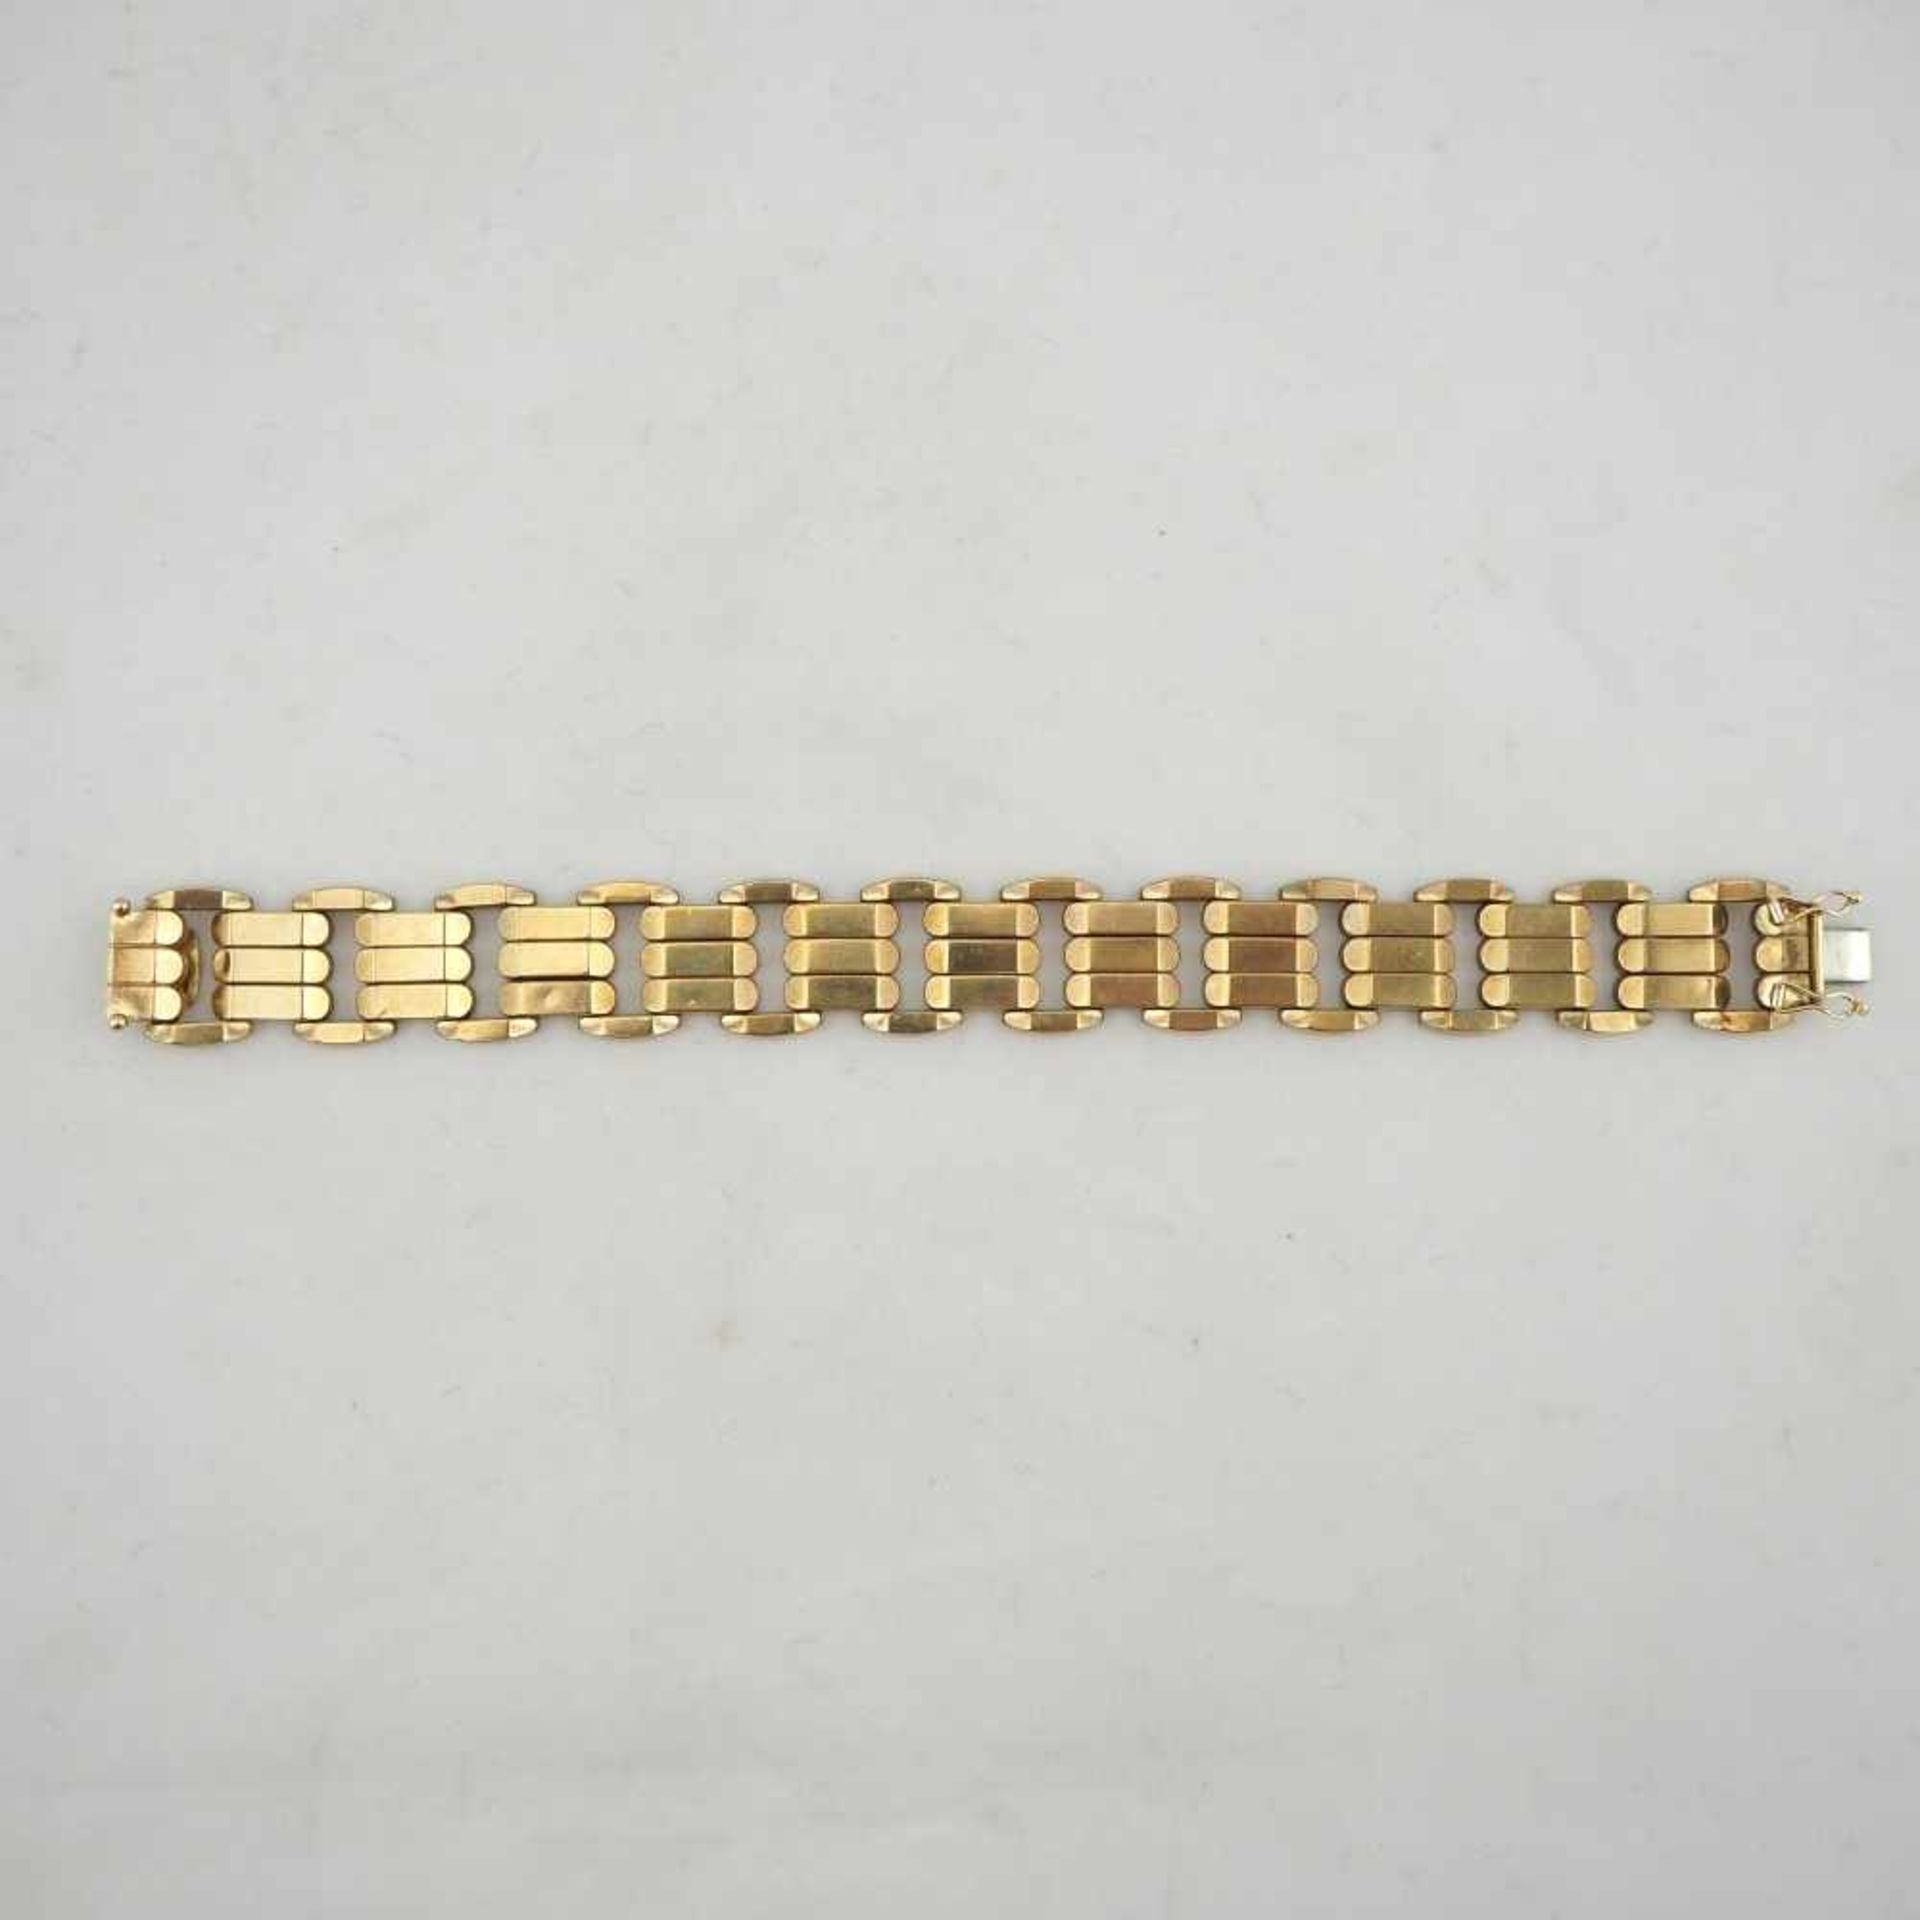 Armband, 8kt Gold30,5g Gesamtgewicht, 19cm Gesamtlänge, 333er Goldstempel am Verschluss, gebrauchtes - Bild 2 aus 3